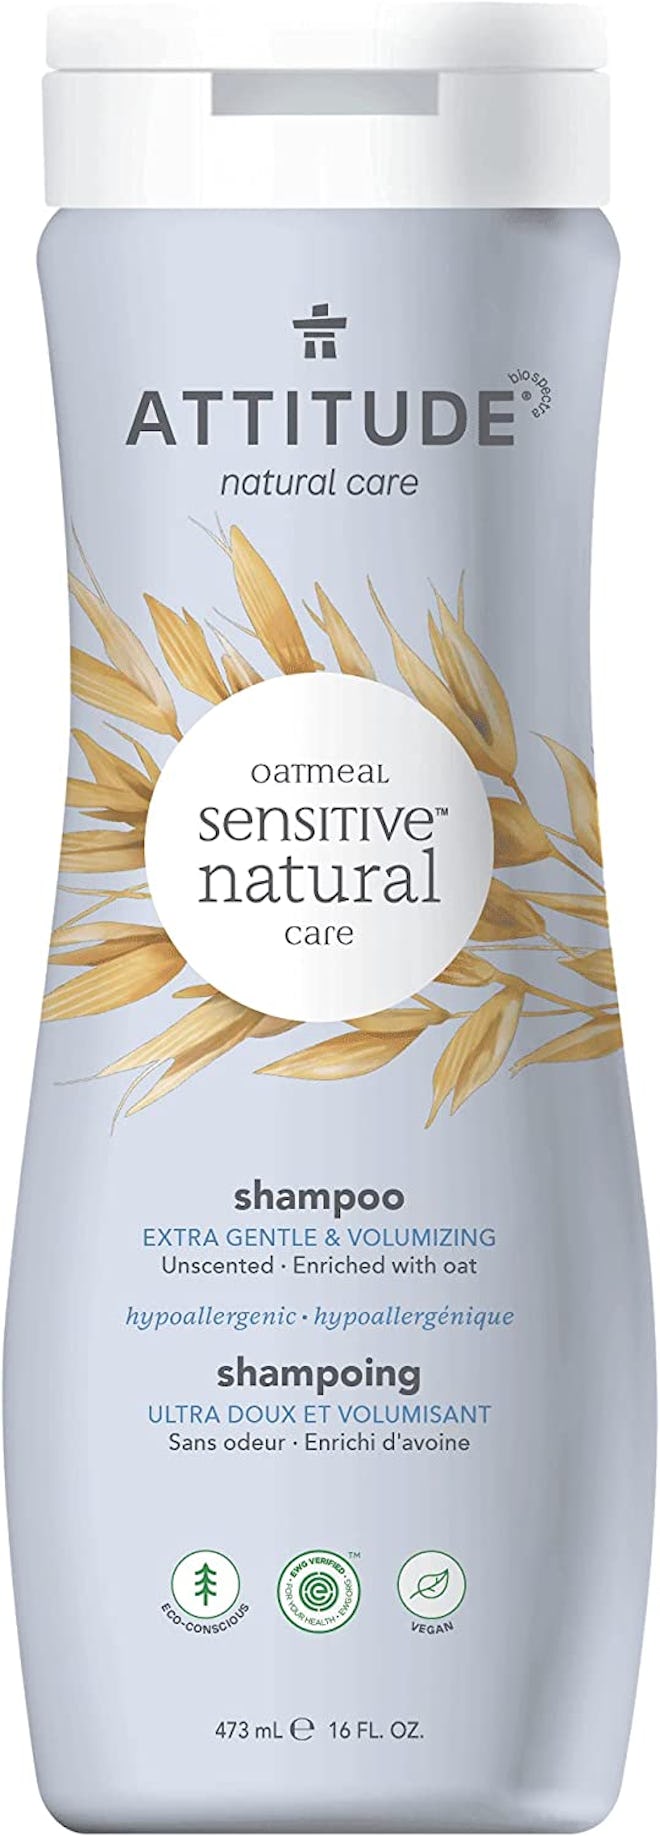 attitude extra gentle and volumizing shampoo is the best chemical free volumizing shampoo